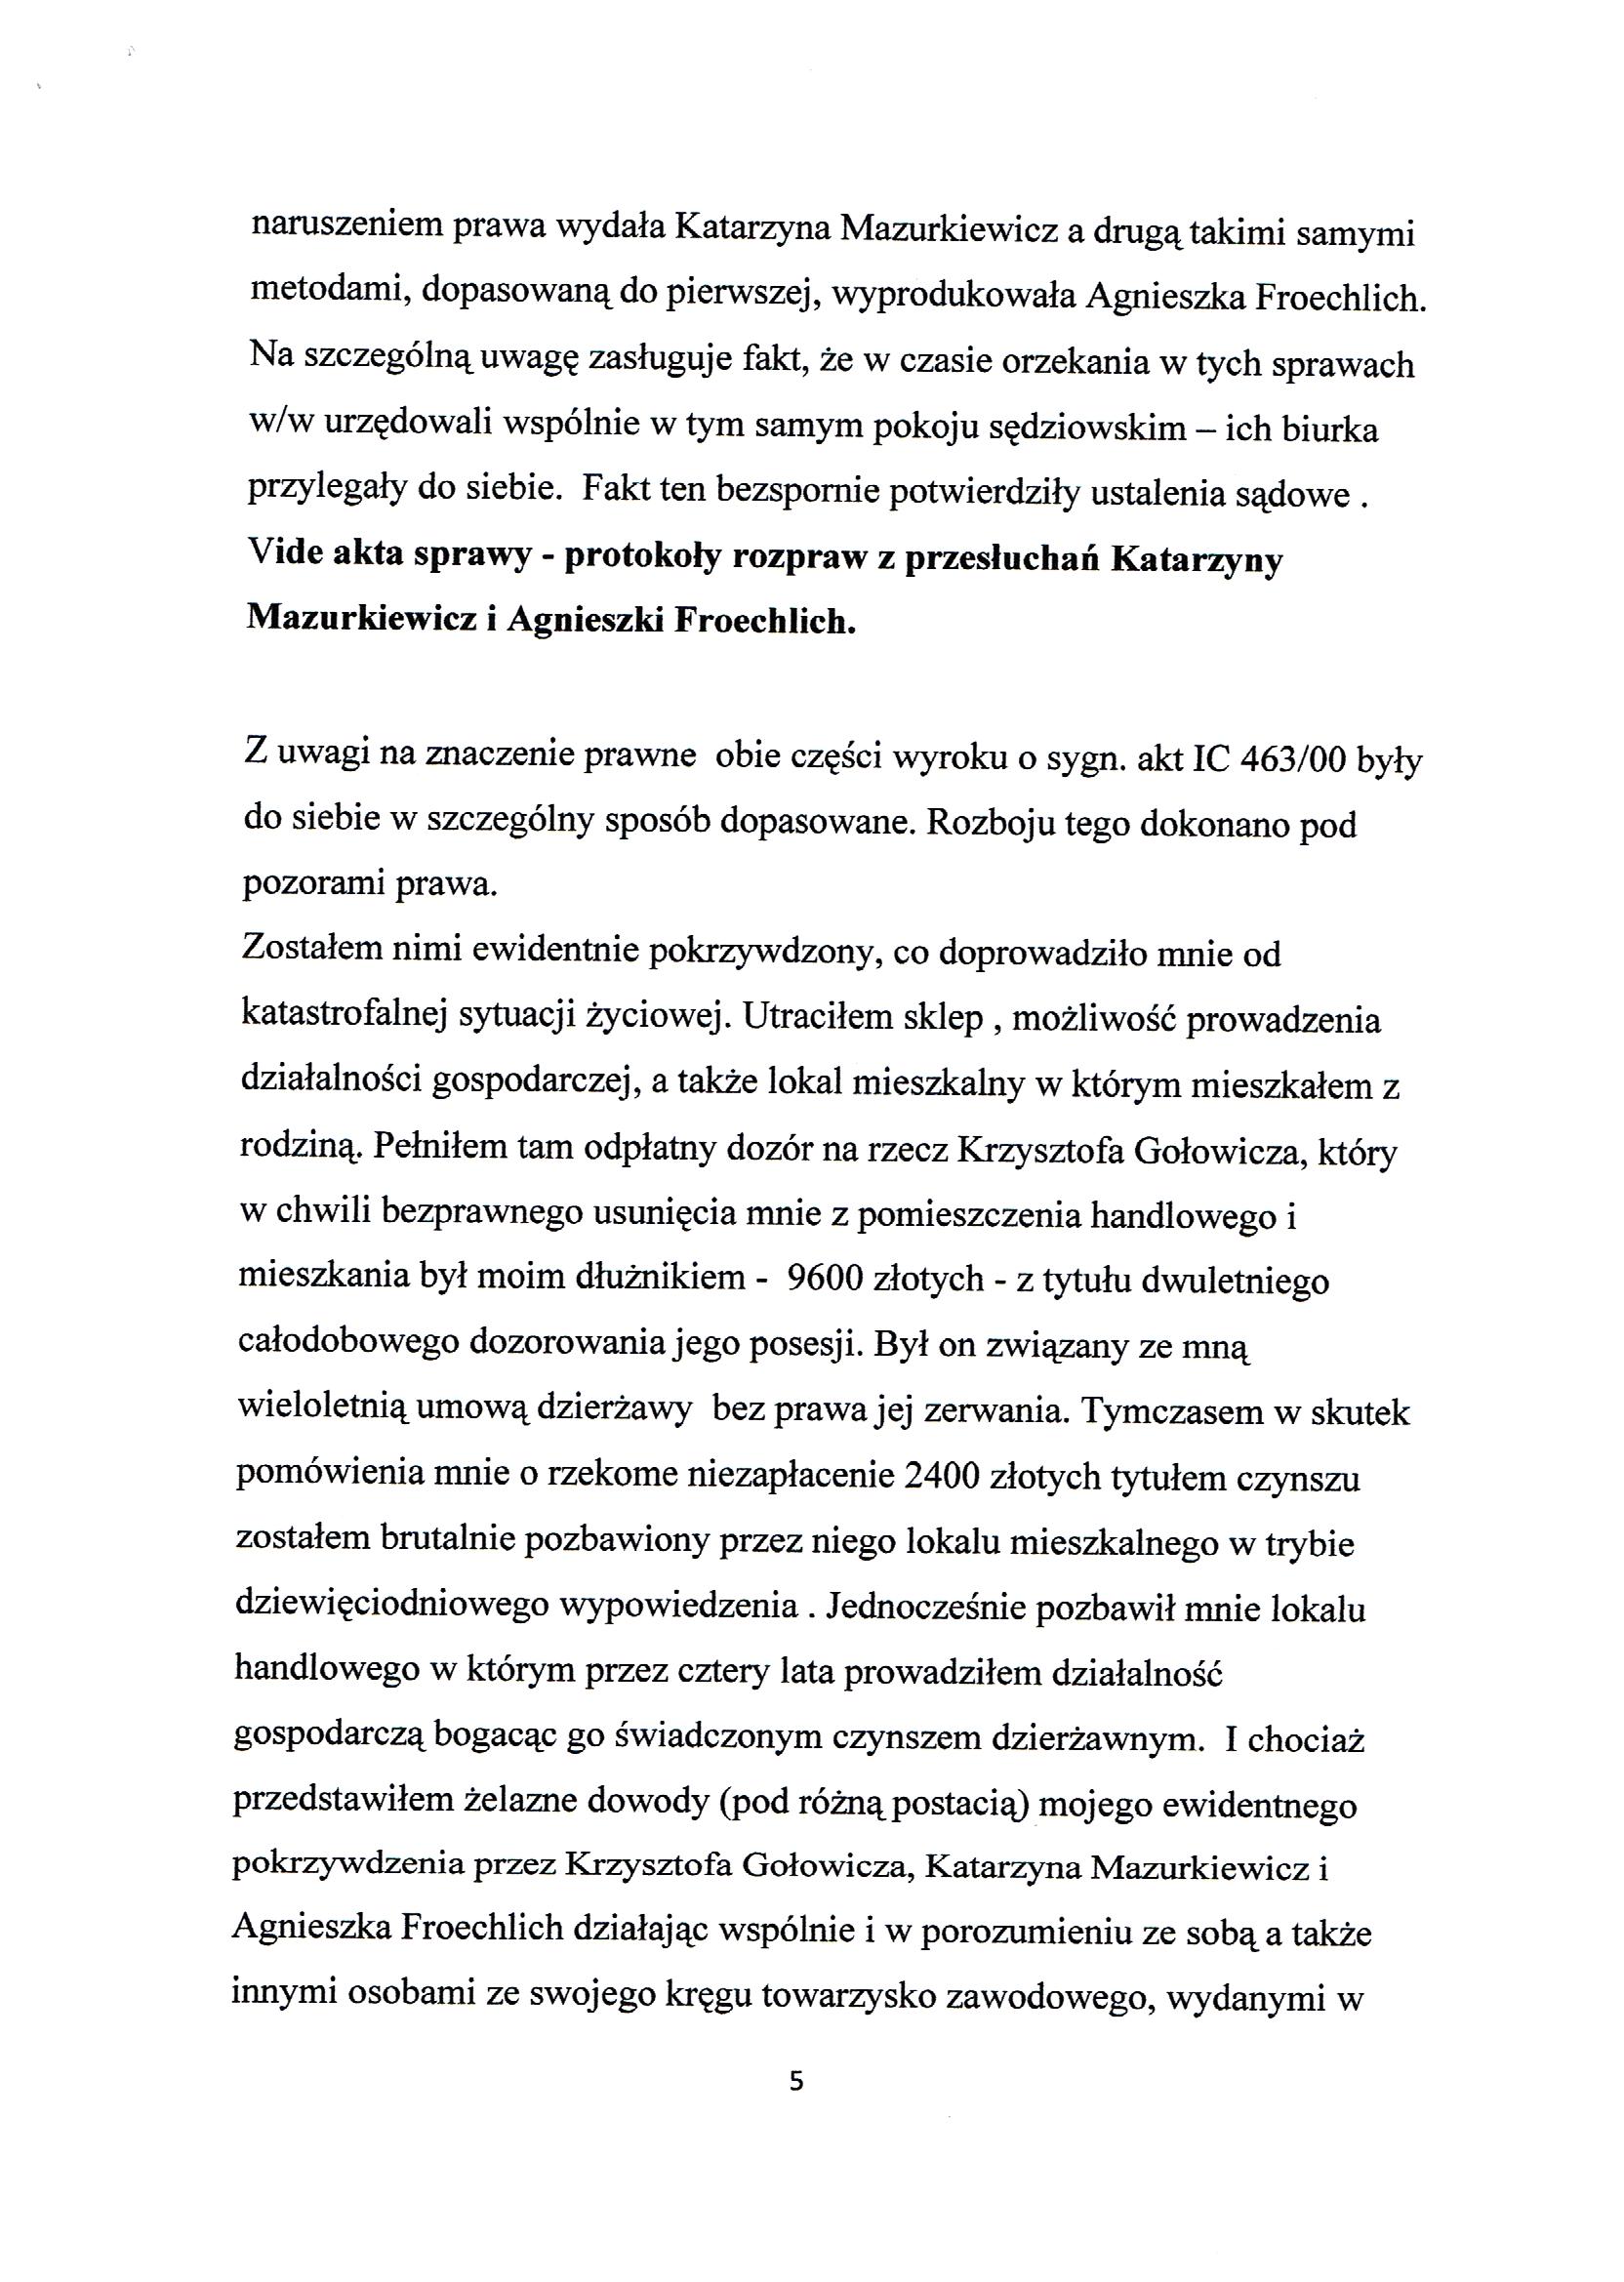 Apelacja Krzyształowski skan 005